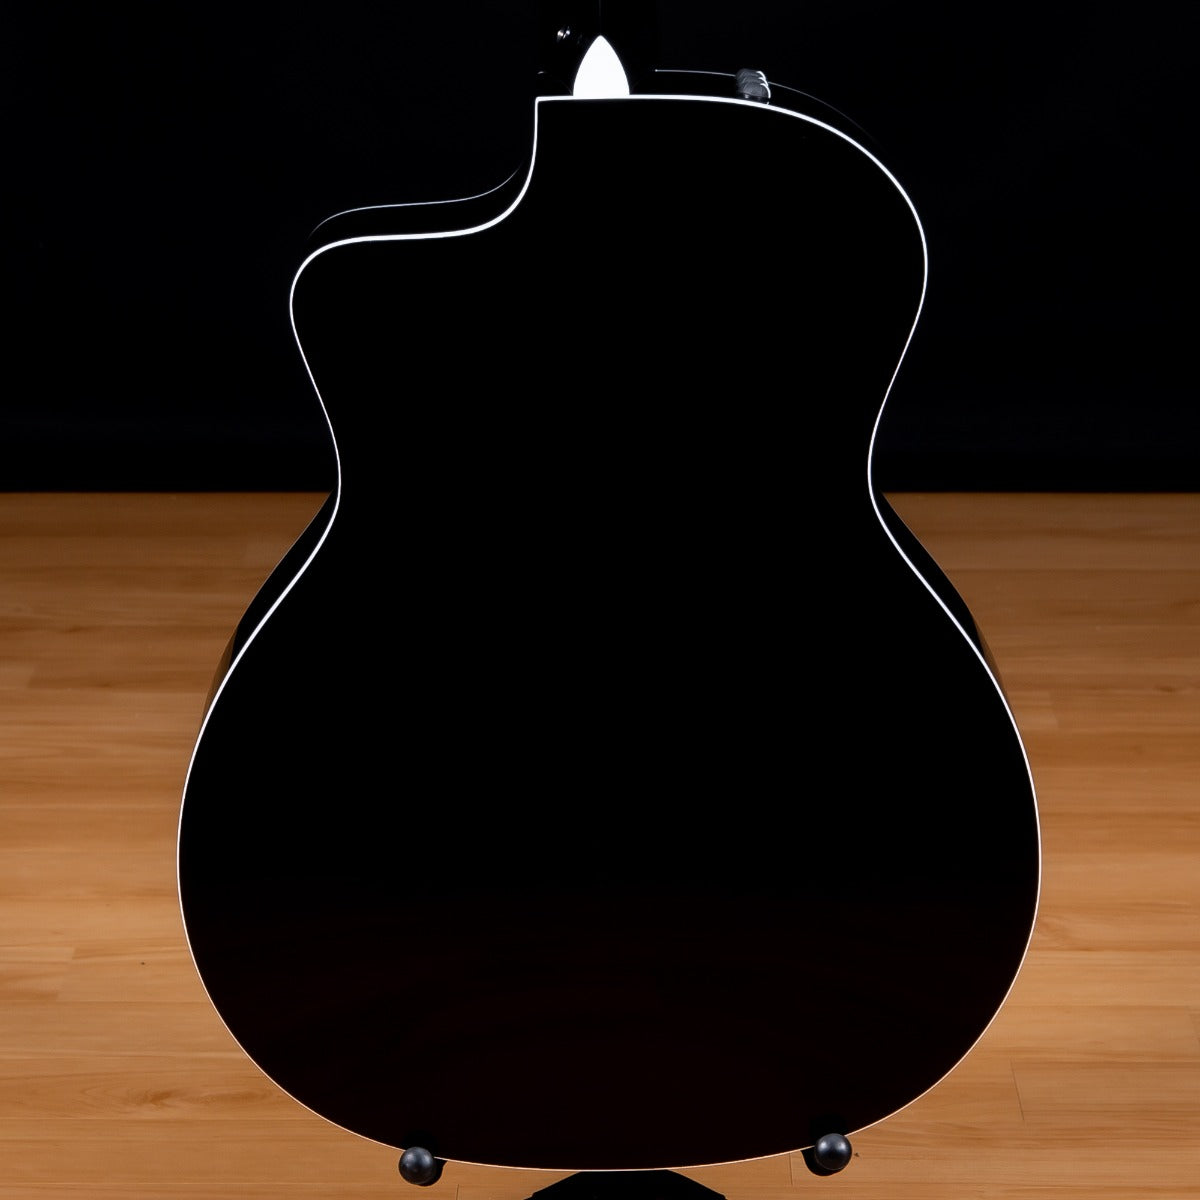 Taylor 214ce DLX LTD Acoustic-Electric Guitar - Trans Grey view 4